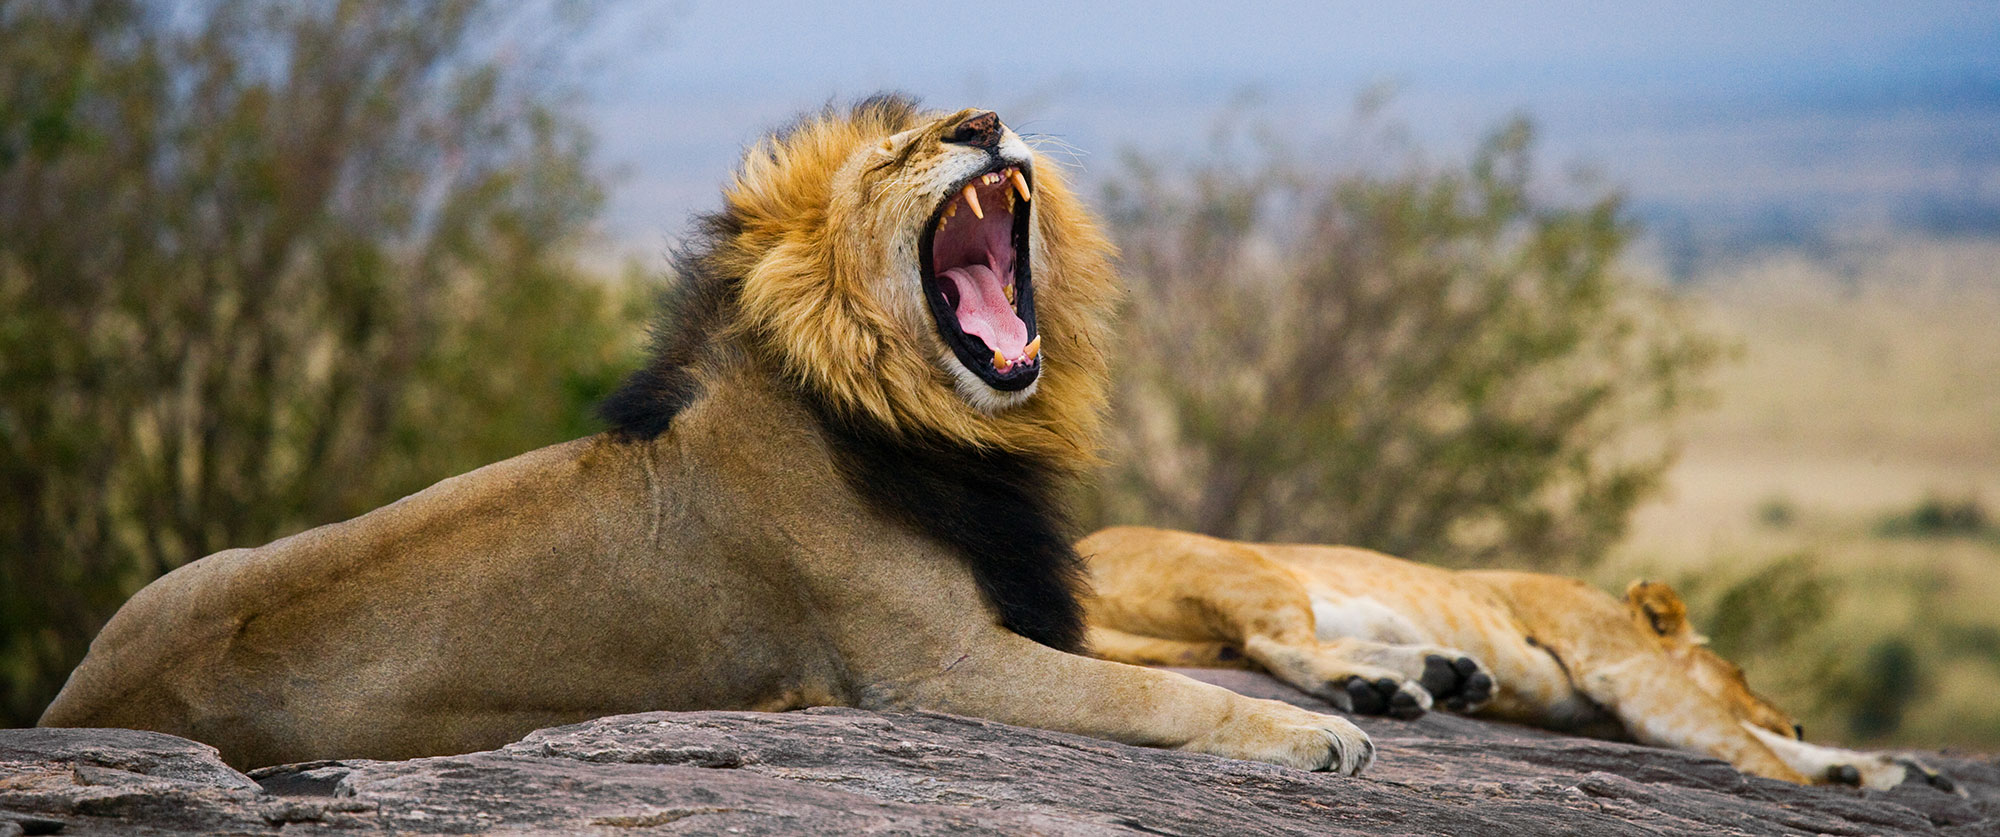 Tanzania Safari Getaway - Big 5 of Africa - Lion in Tanzania